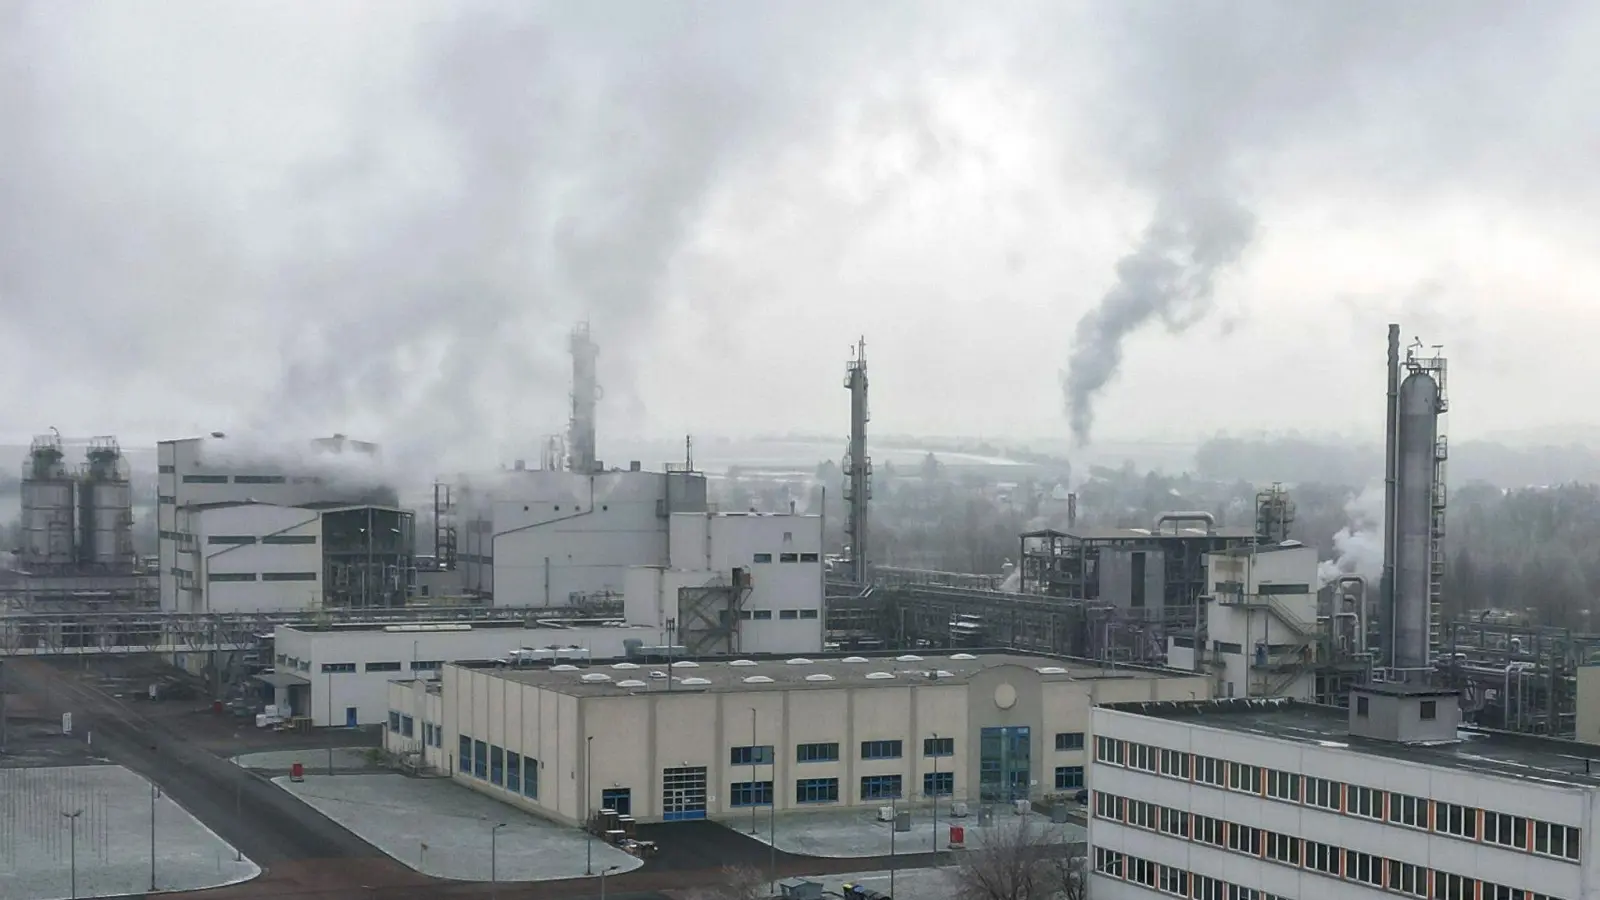 Werksanlagen im Chemie- und Industriepark Zeitz. Die Produktion der Chemie- und Pharmaindustrie schrumpfte 2022 im Vergleich zum Vorjahr um 6,6 Prozent. (Foto: Bodo Schackow/dpa)